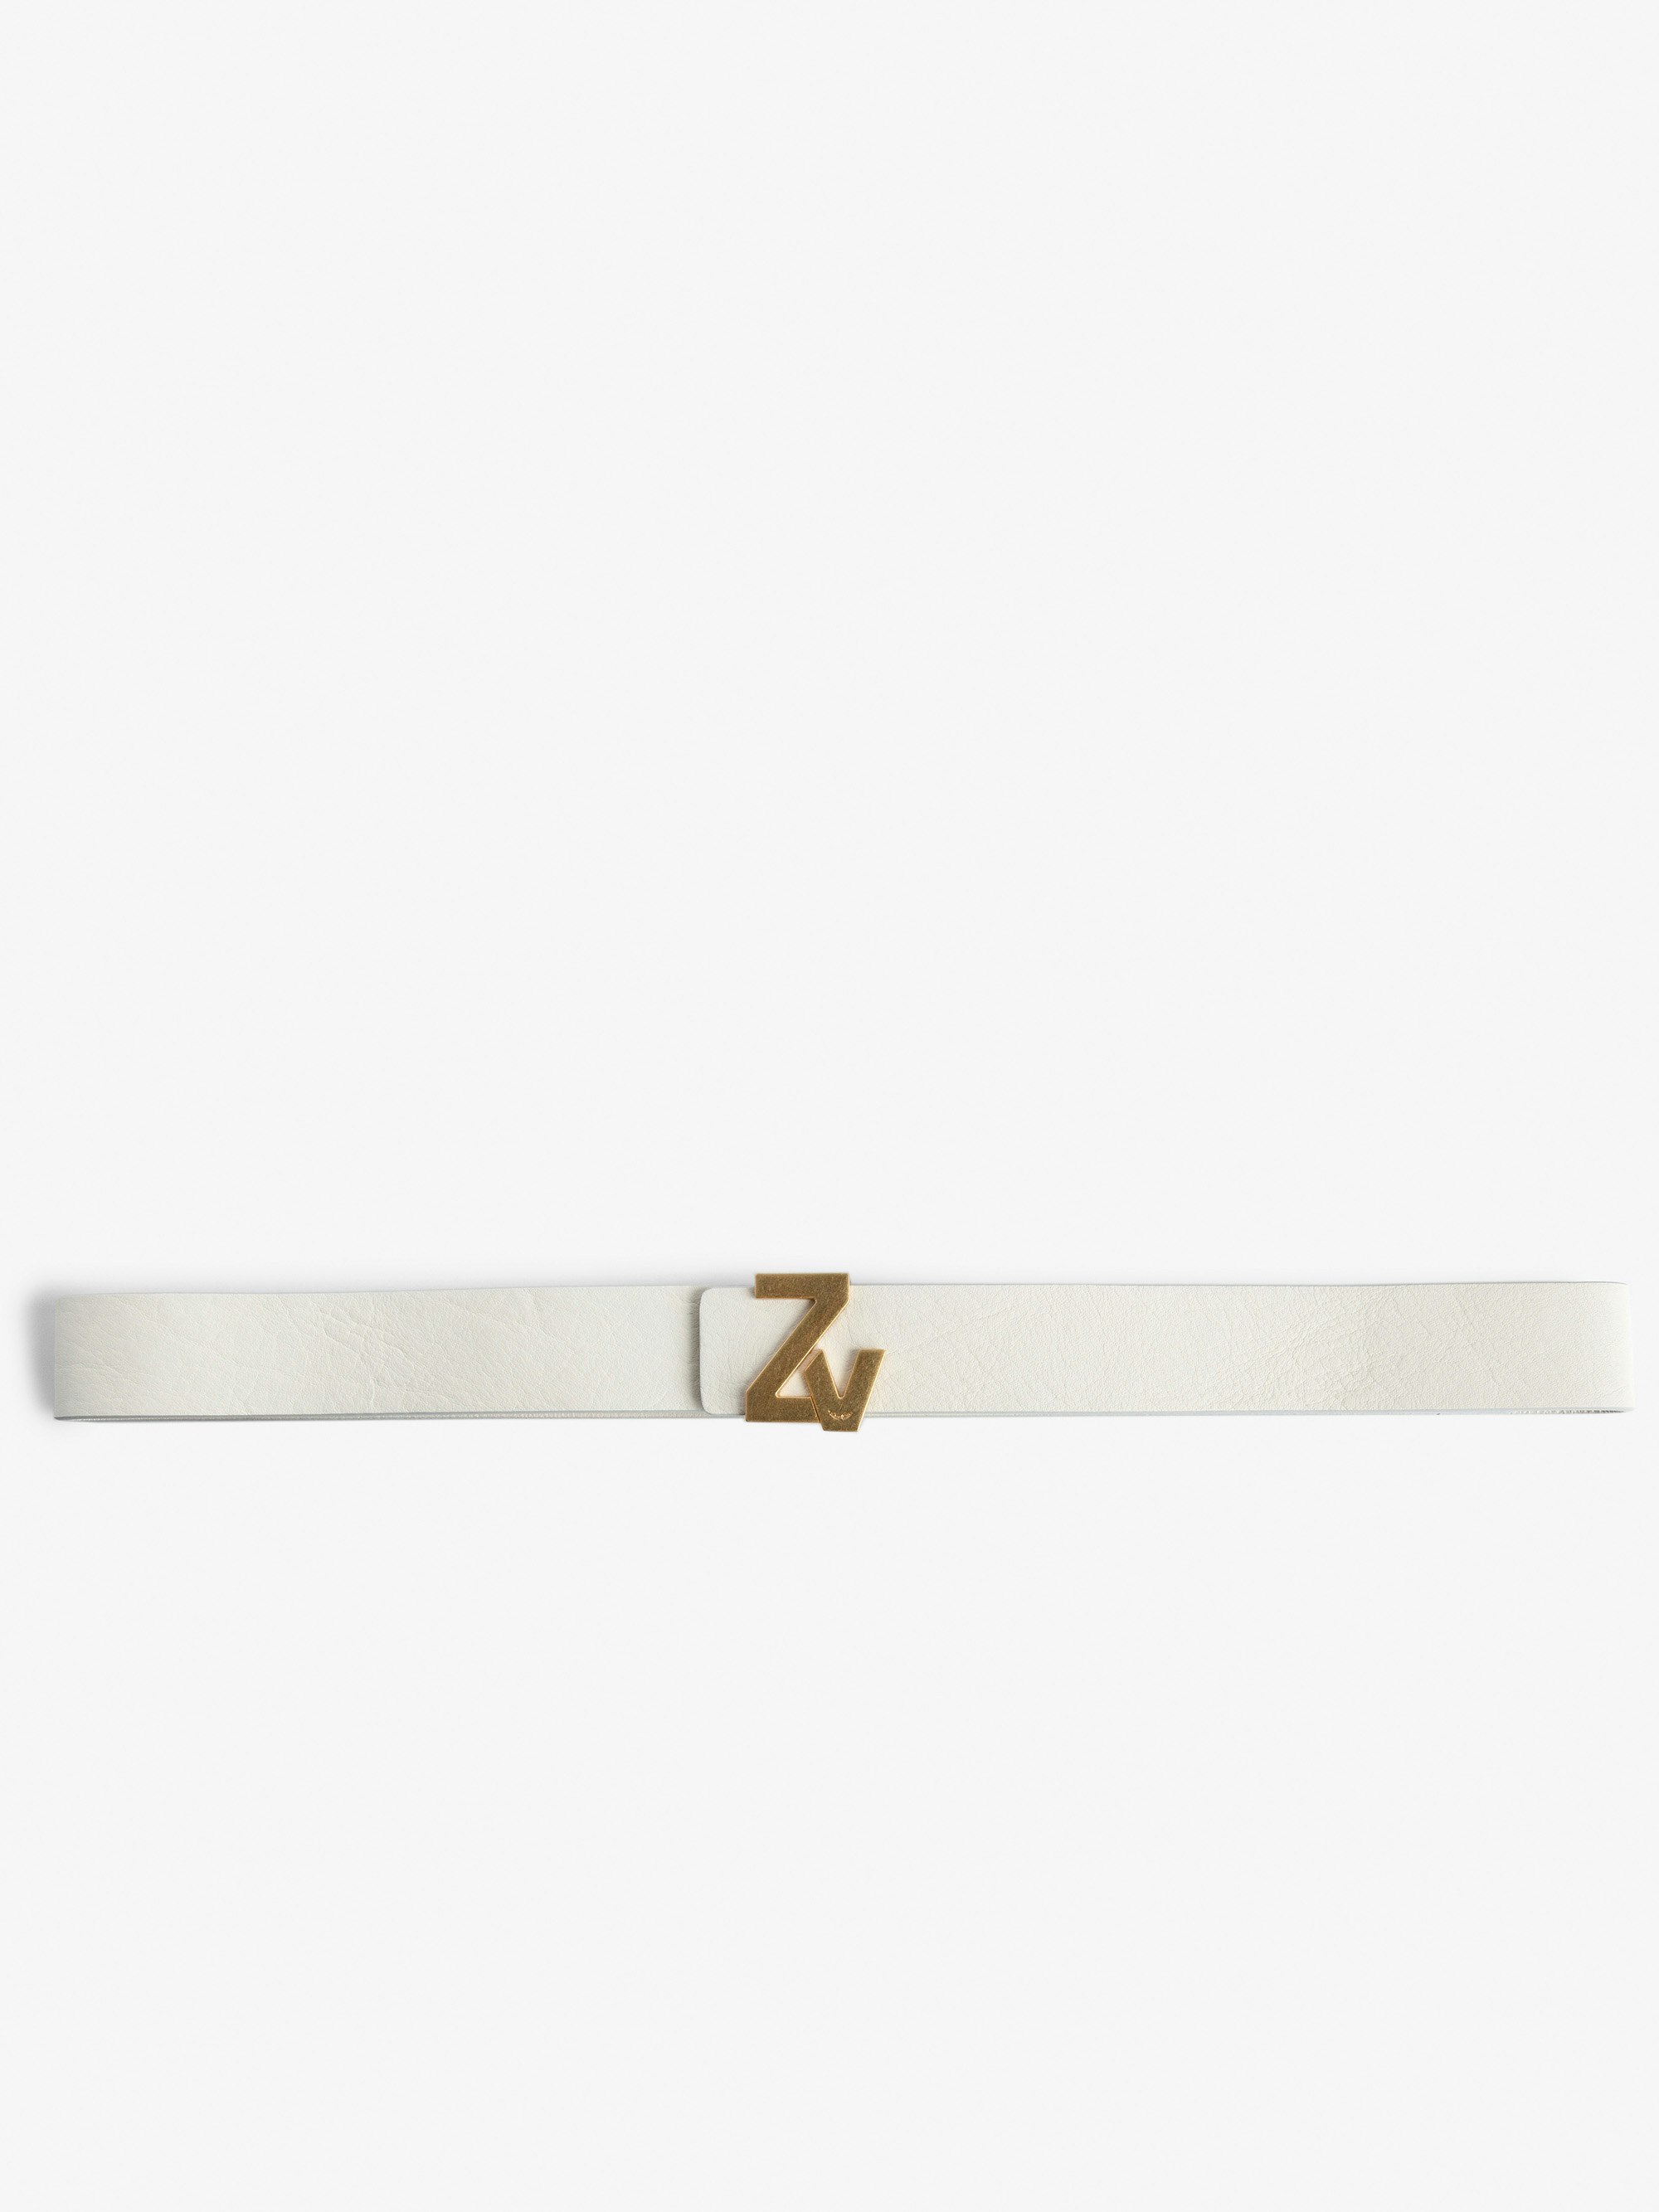 Gürtel mit ZV-Initiale La Belt - Ecrufarbener Damen-Ledergürtel mit goldfarbener ZV-Schnalle.